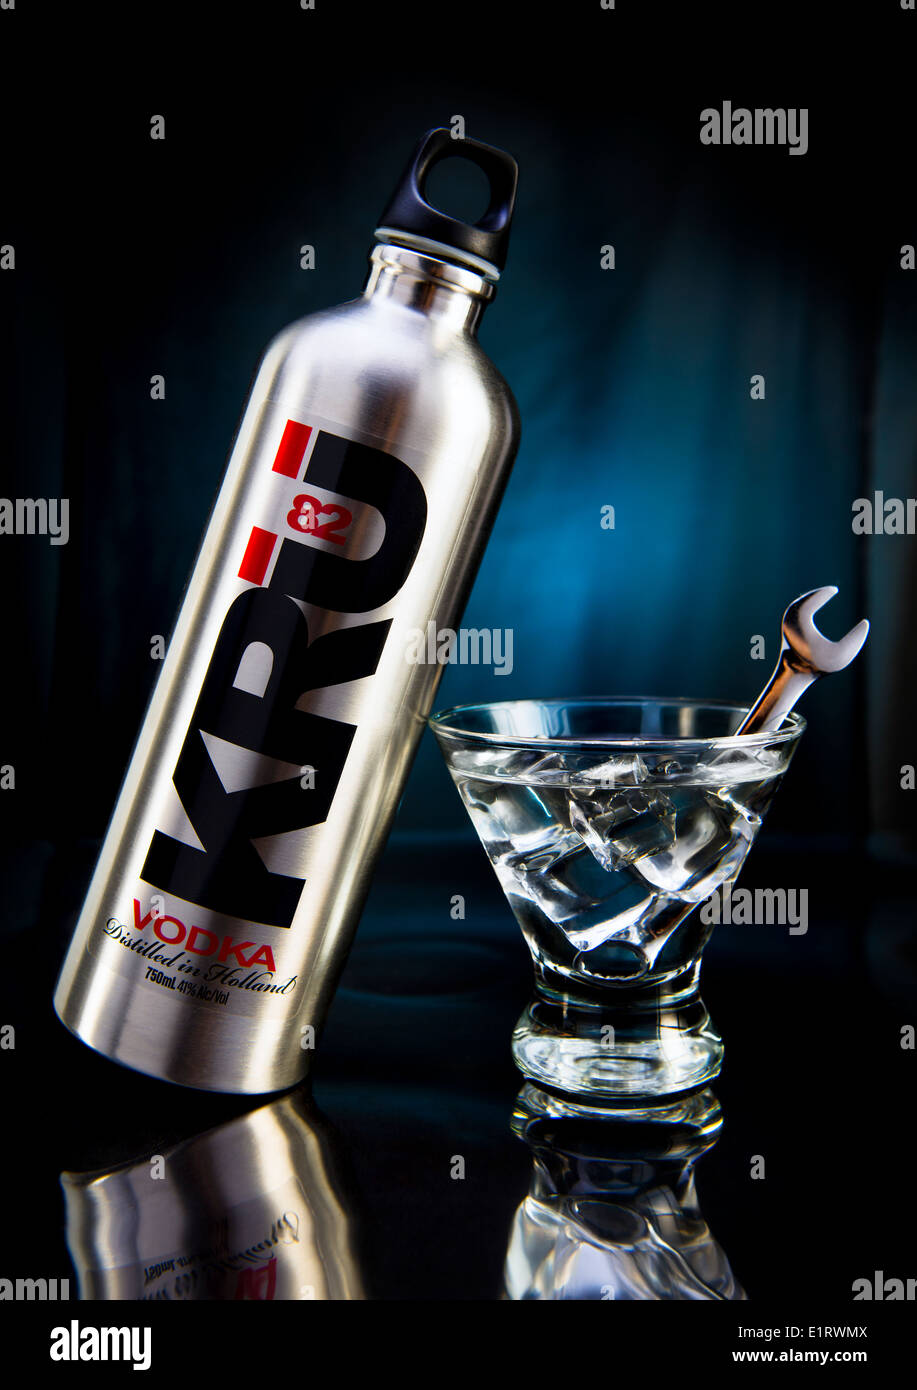 KRU 82 Vodka con Martini guarnito con una chiave Chrome agitare swizzle stick / concetto: industriale, 'blue collar' Foto Stock